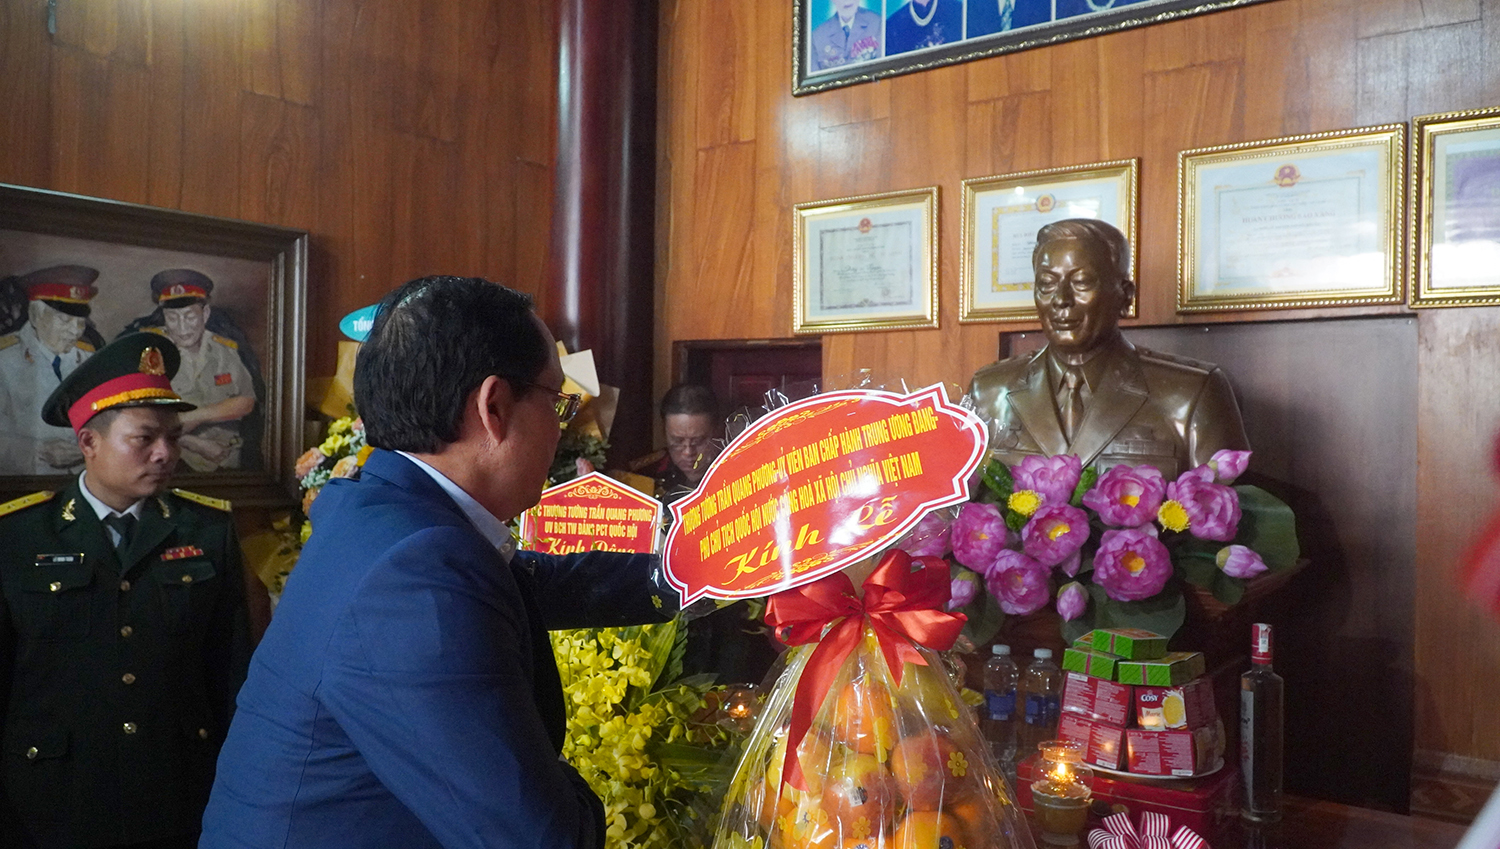 Đồng chí Thượng tướng, Phó Chủ tịch Quốc hội Trần Quang Phương dâng hương tưởng niệm Trung tướng Đồng Sỹ Nguyên.